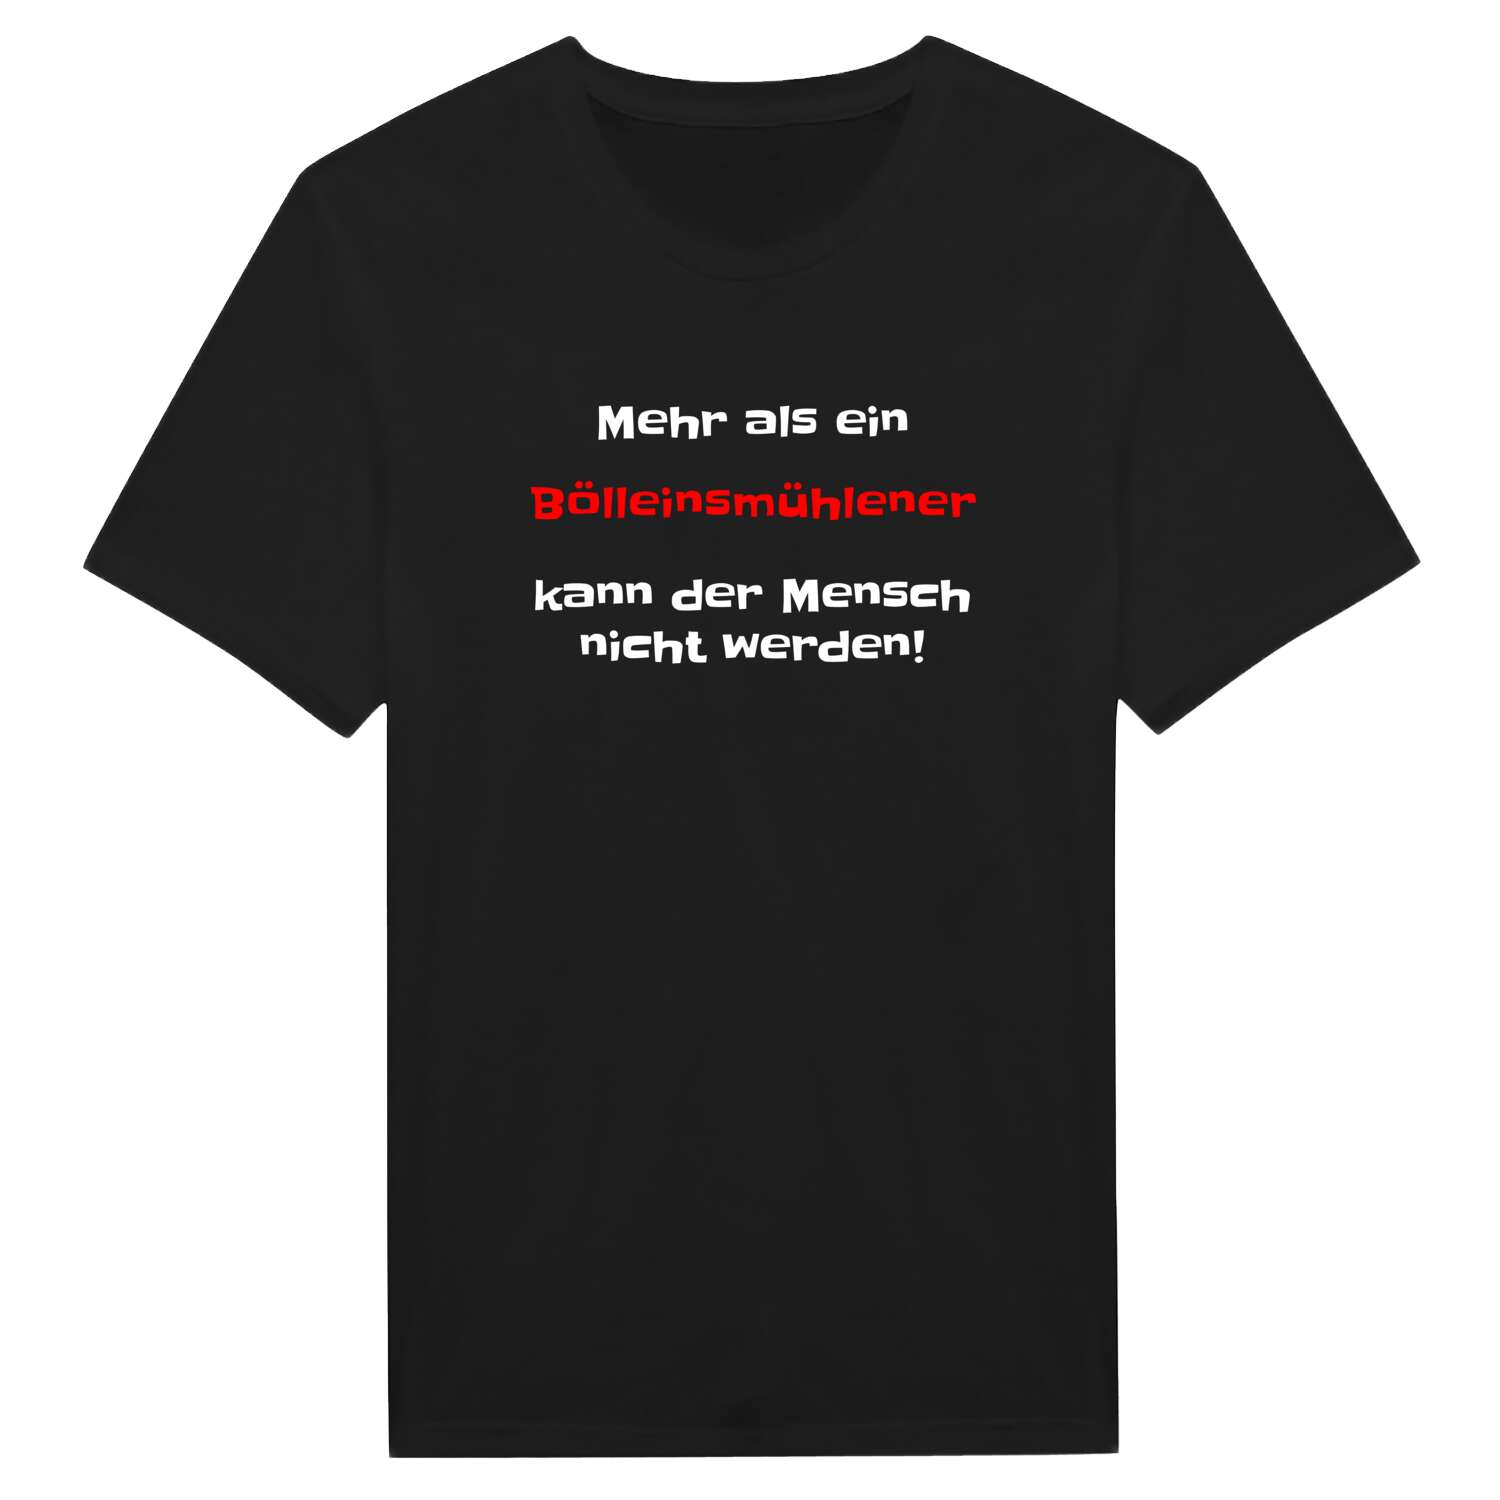 Bölleinsmühle T-Shirt »Mehr als ein«